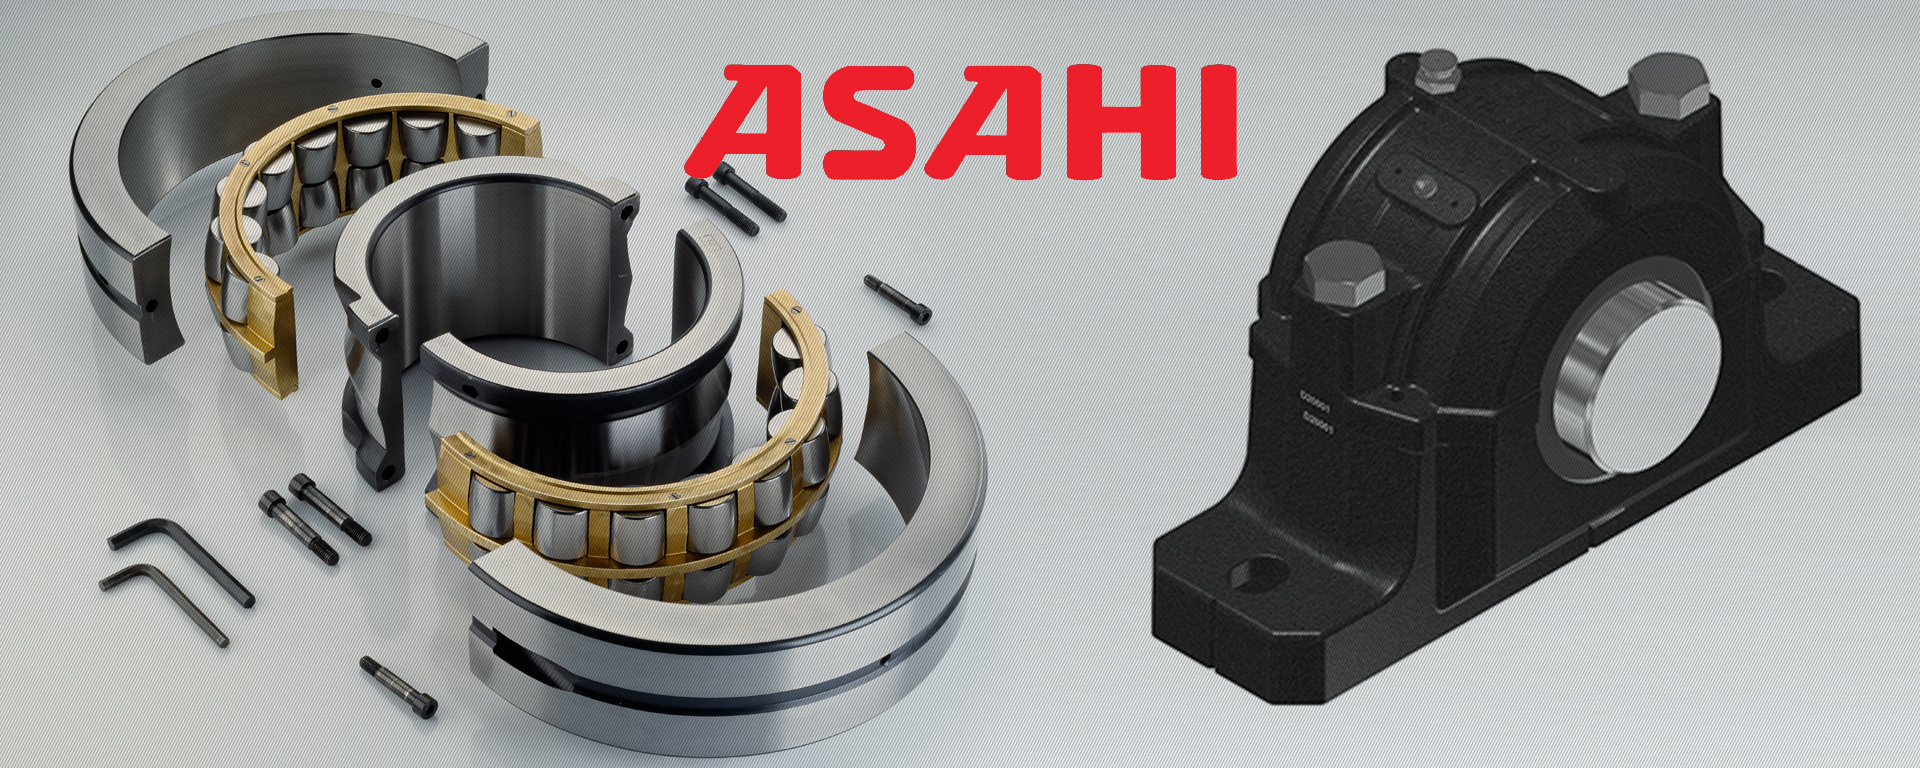 ASAHI轴承 - 上海盛希轴承有限公司